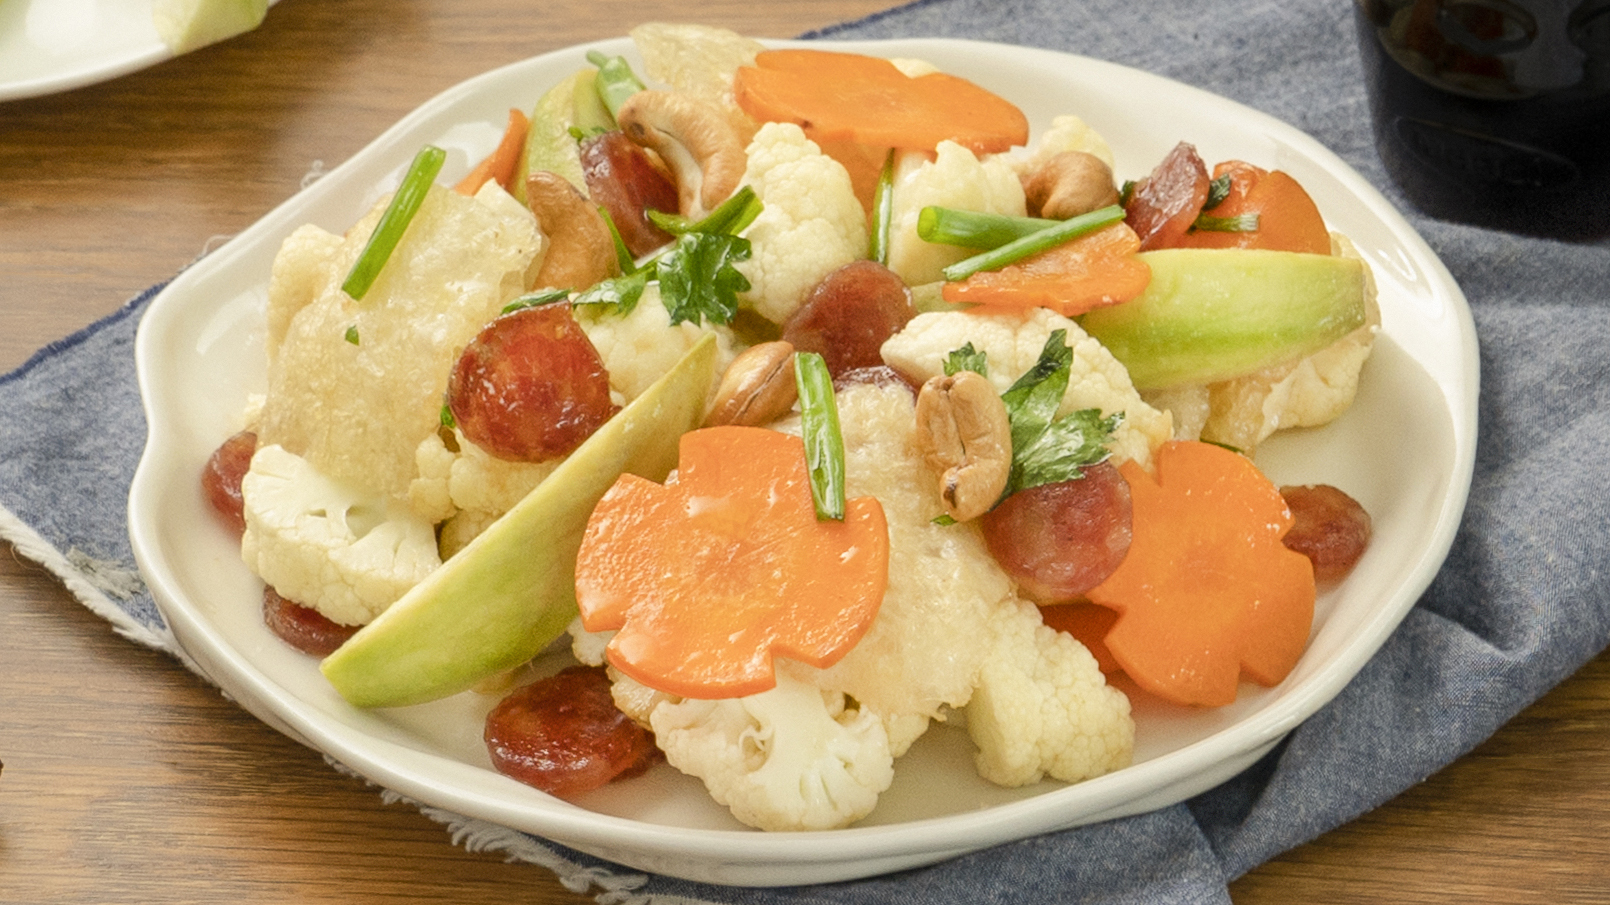 Bong bóng xào rau củ là một món ăn vô cùng dễ thực hiện cho bữa cơm gia đình thêm mới lạ